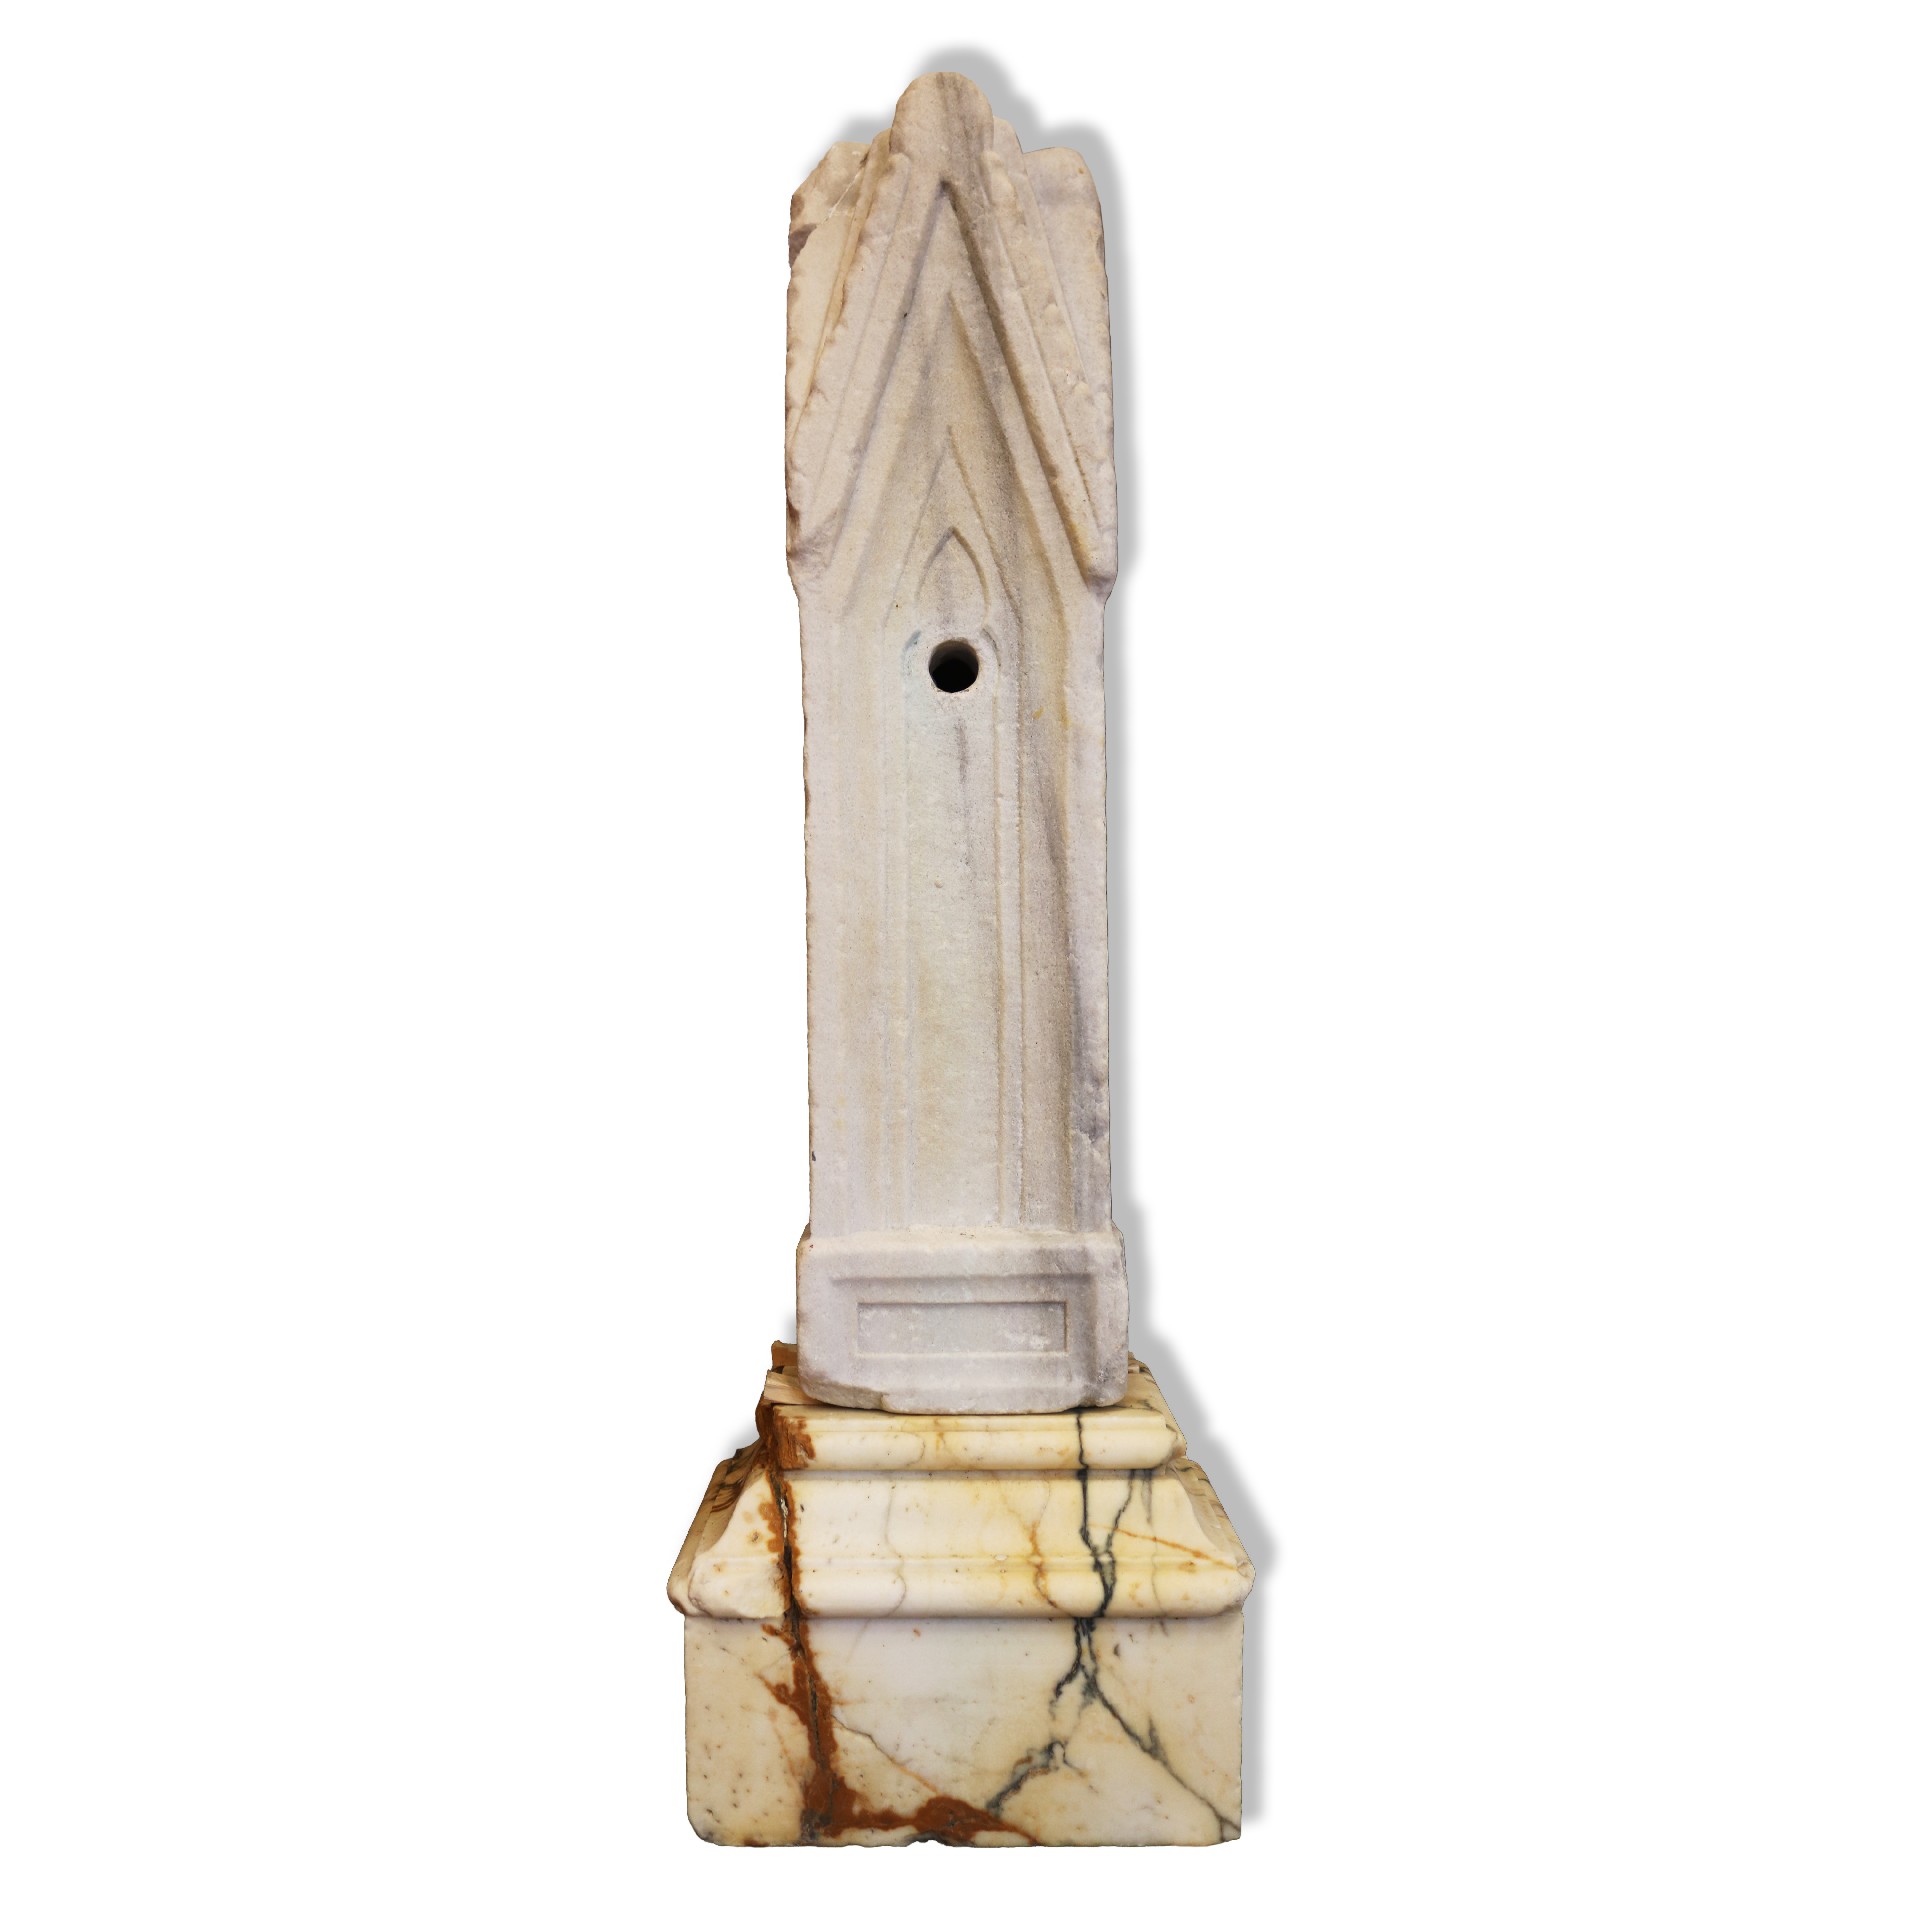 Fontana da centro in marmo. Epoca Romanica. - Fontane Antiche - Arredo Giardino - Prodotti - Antichità Fiorillo